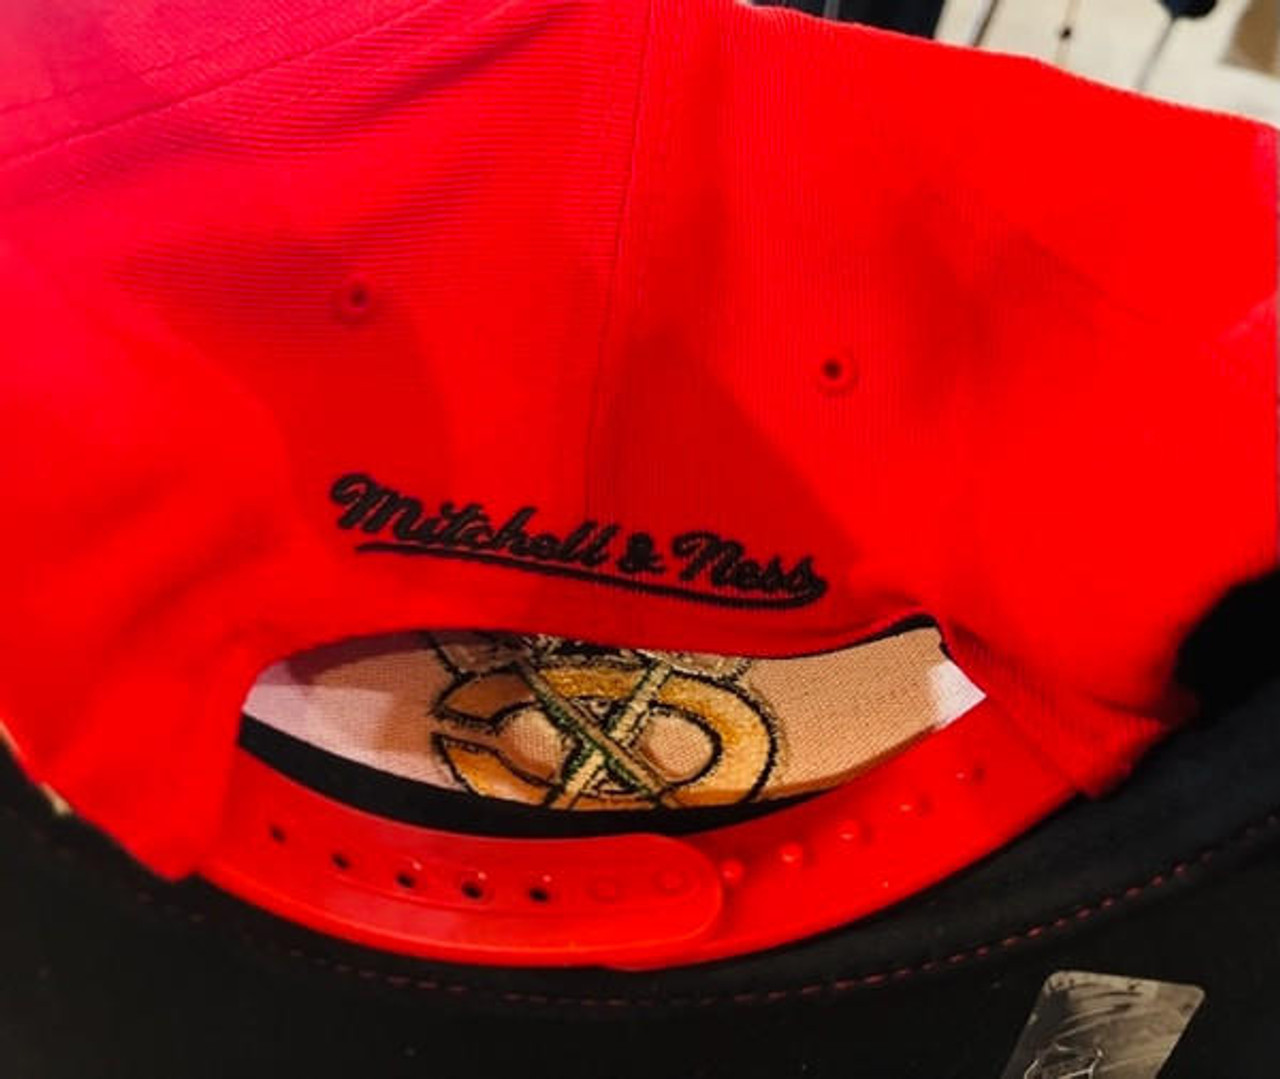 Chicago Blackhawks NHL Mitchell & Ness Vintage Logo Snapback Hat